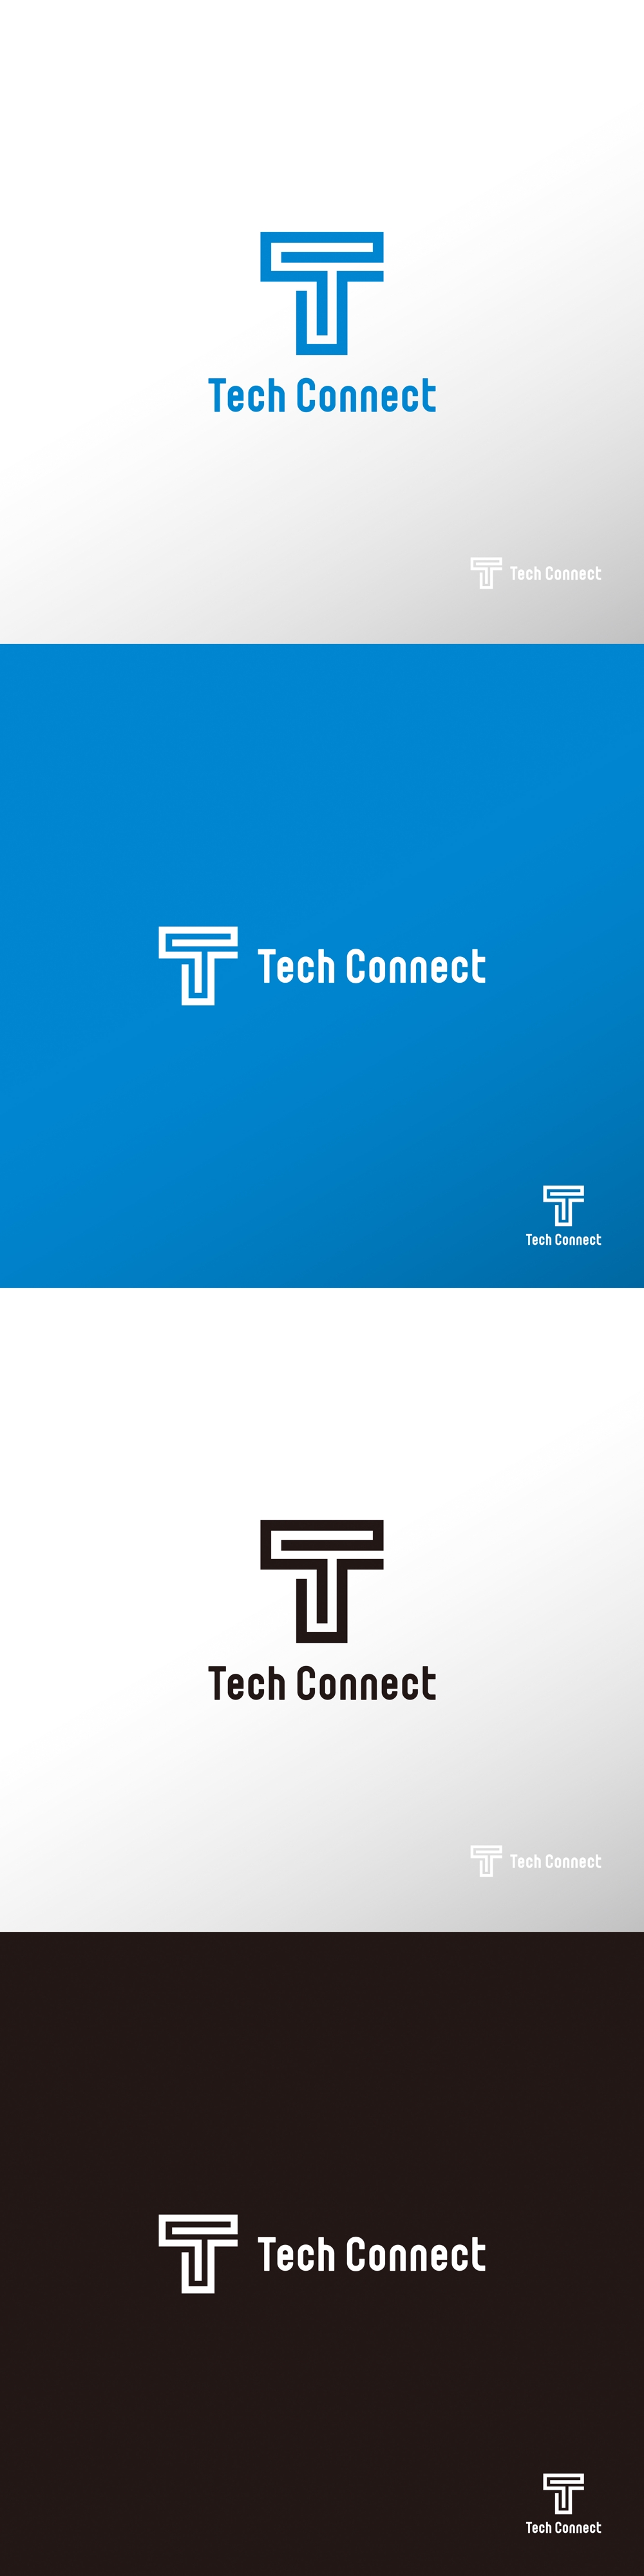 サービス_Tech Connect_ロゴA1.jpg